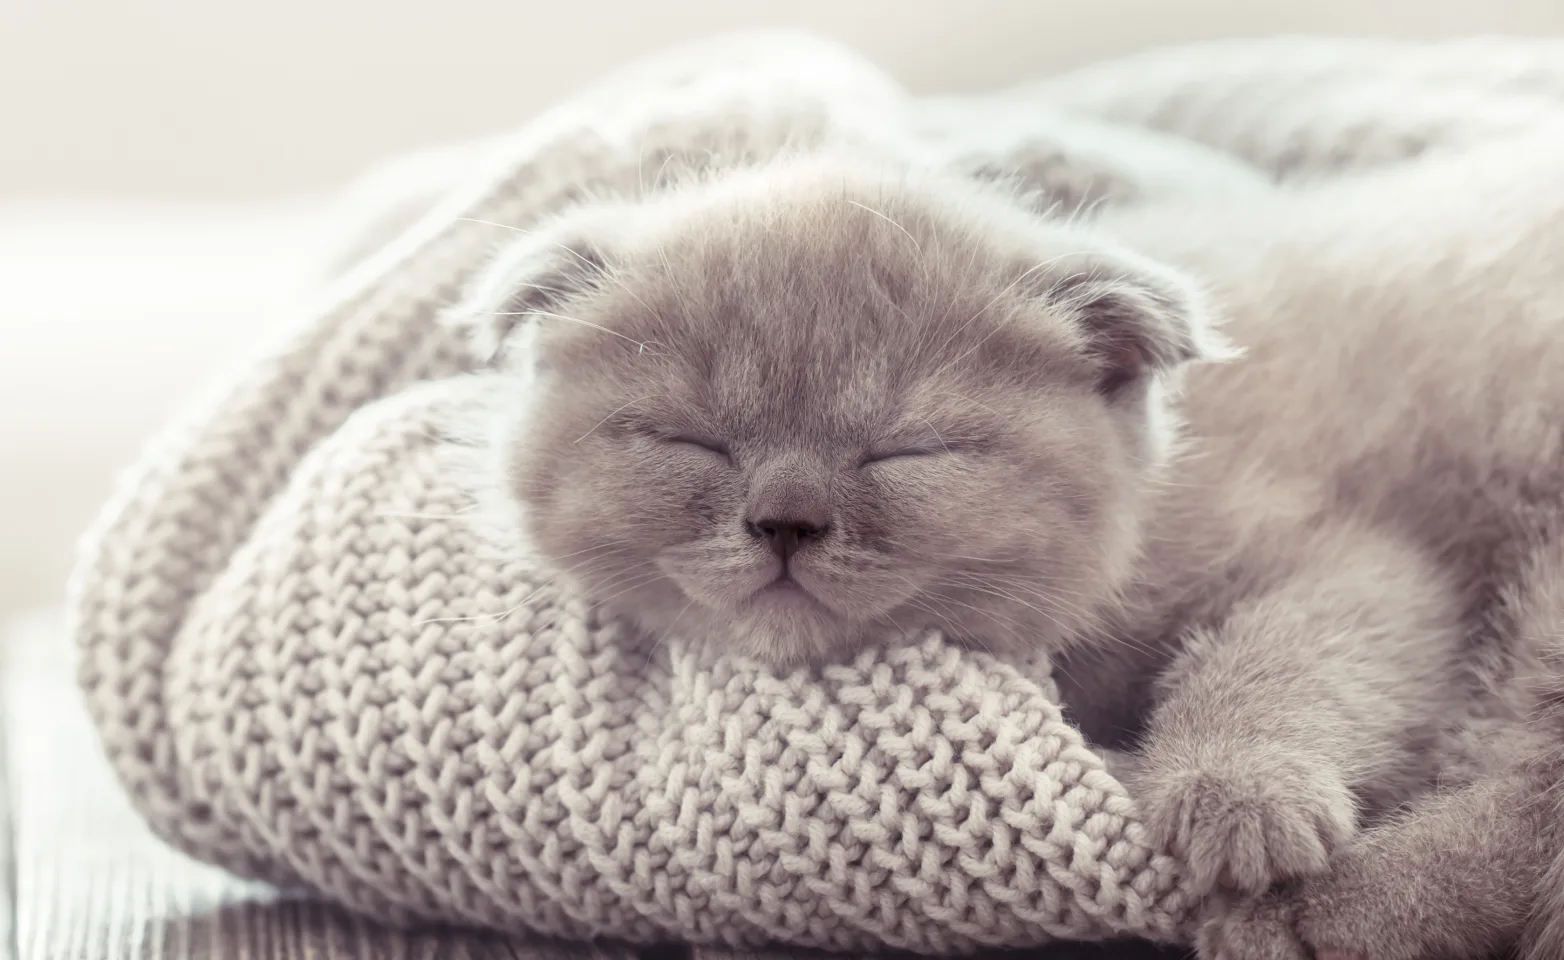 Kitten asleep on a sweater